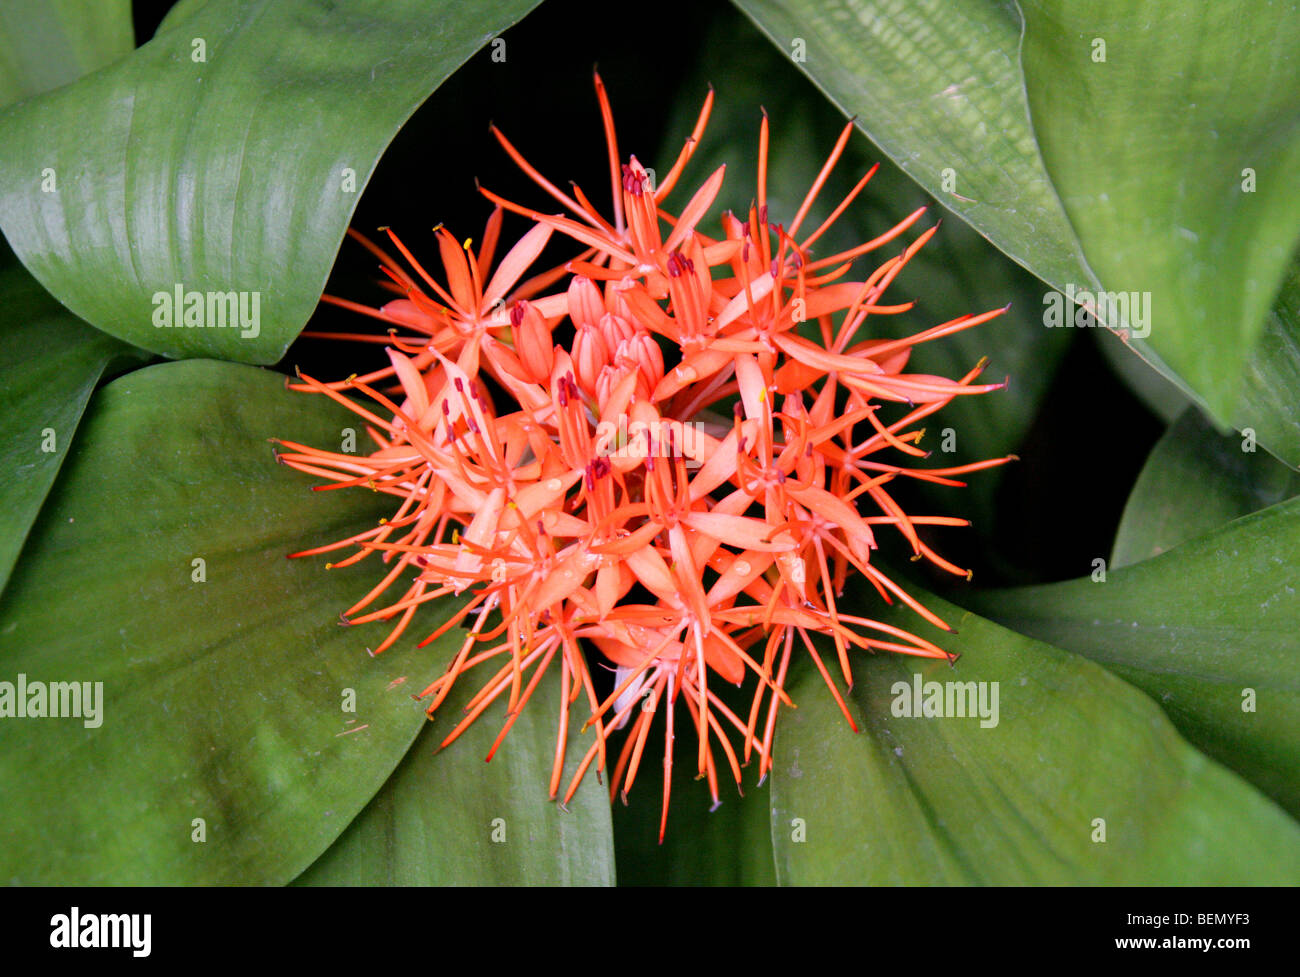 Lirio de sangre, Scadoxus cinnabarinus, Amaryllidaceae, tropical de África Occidental Foto de stock